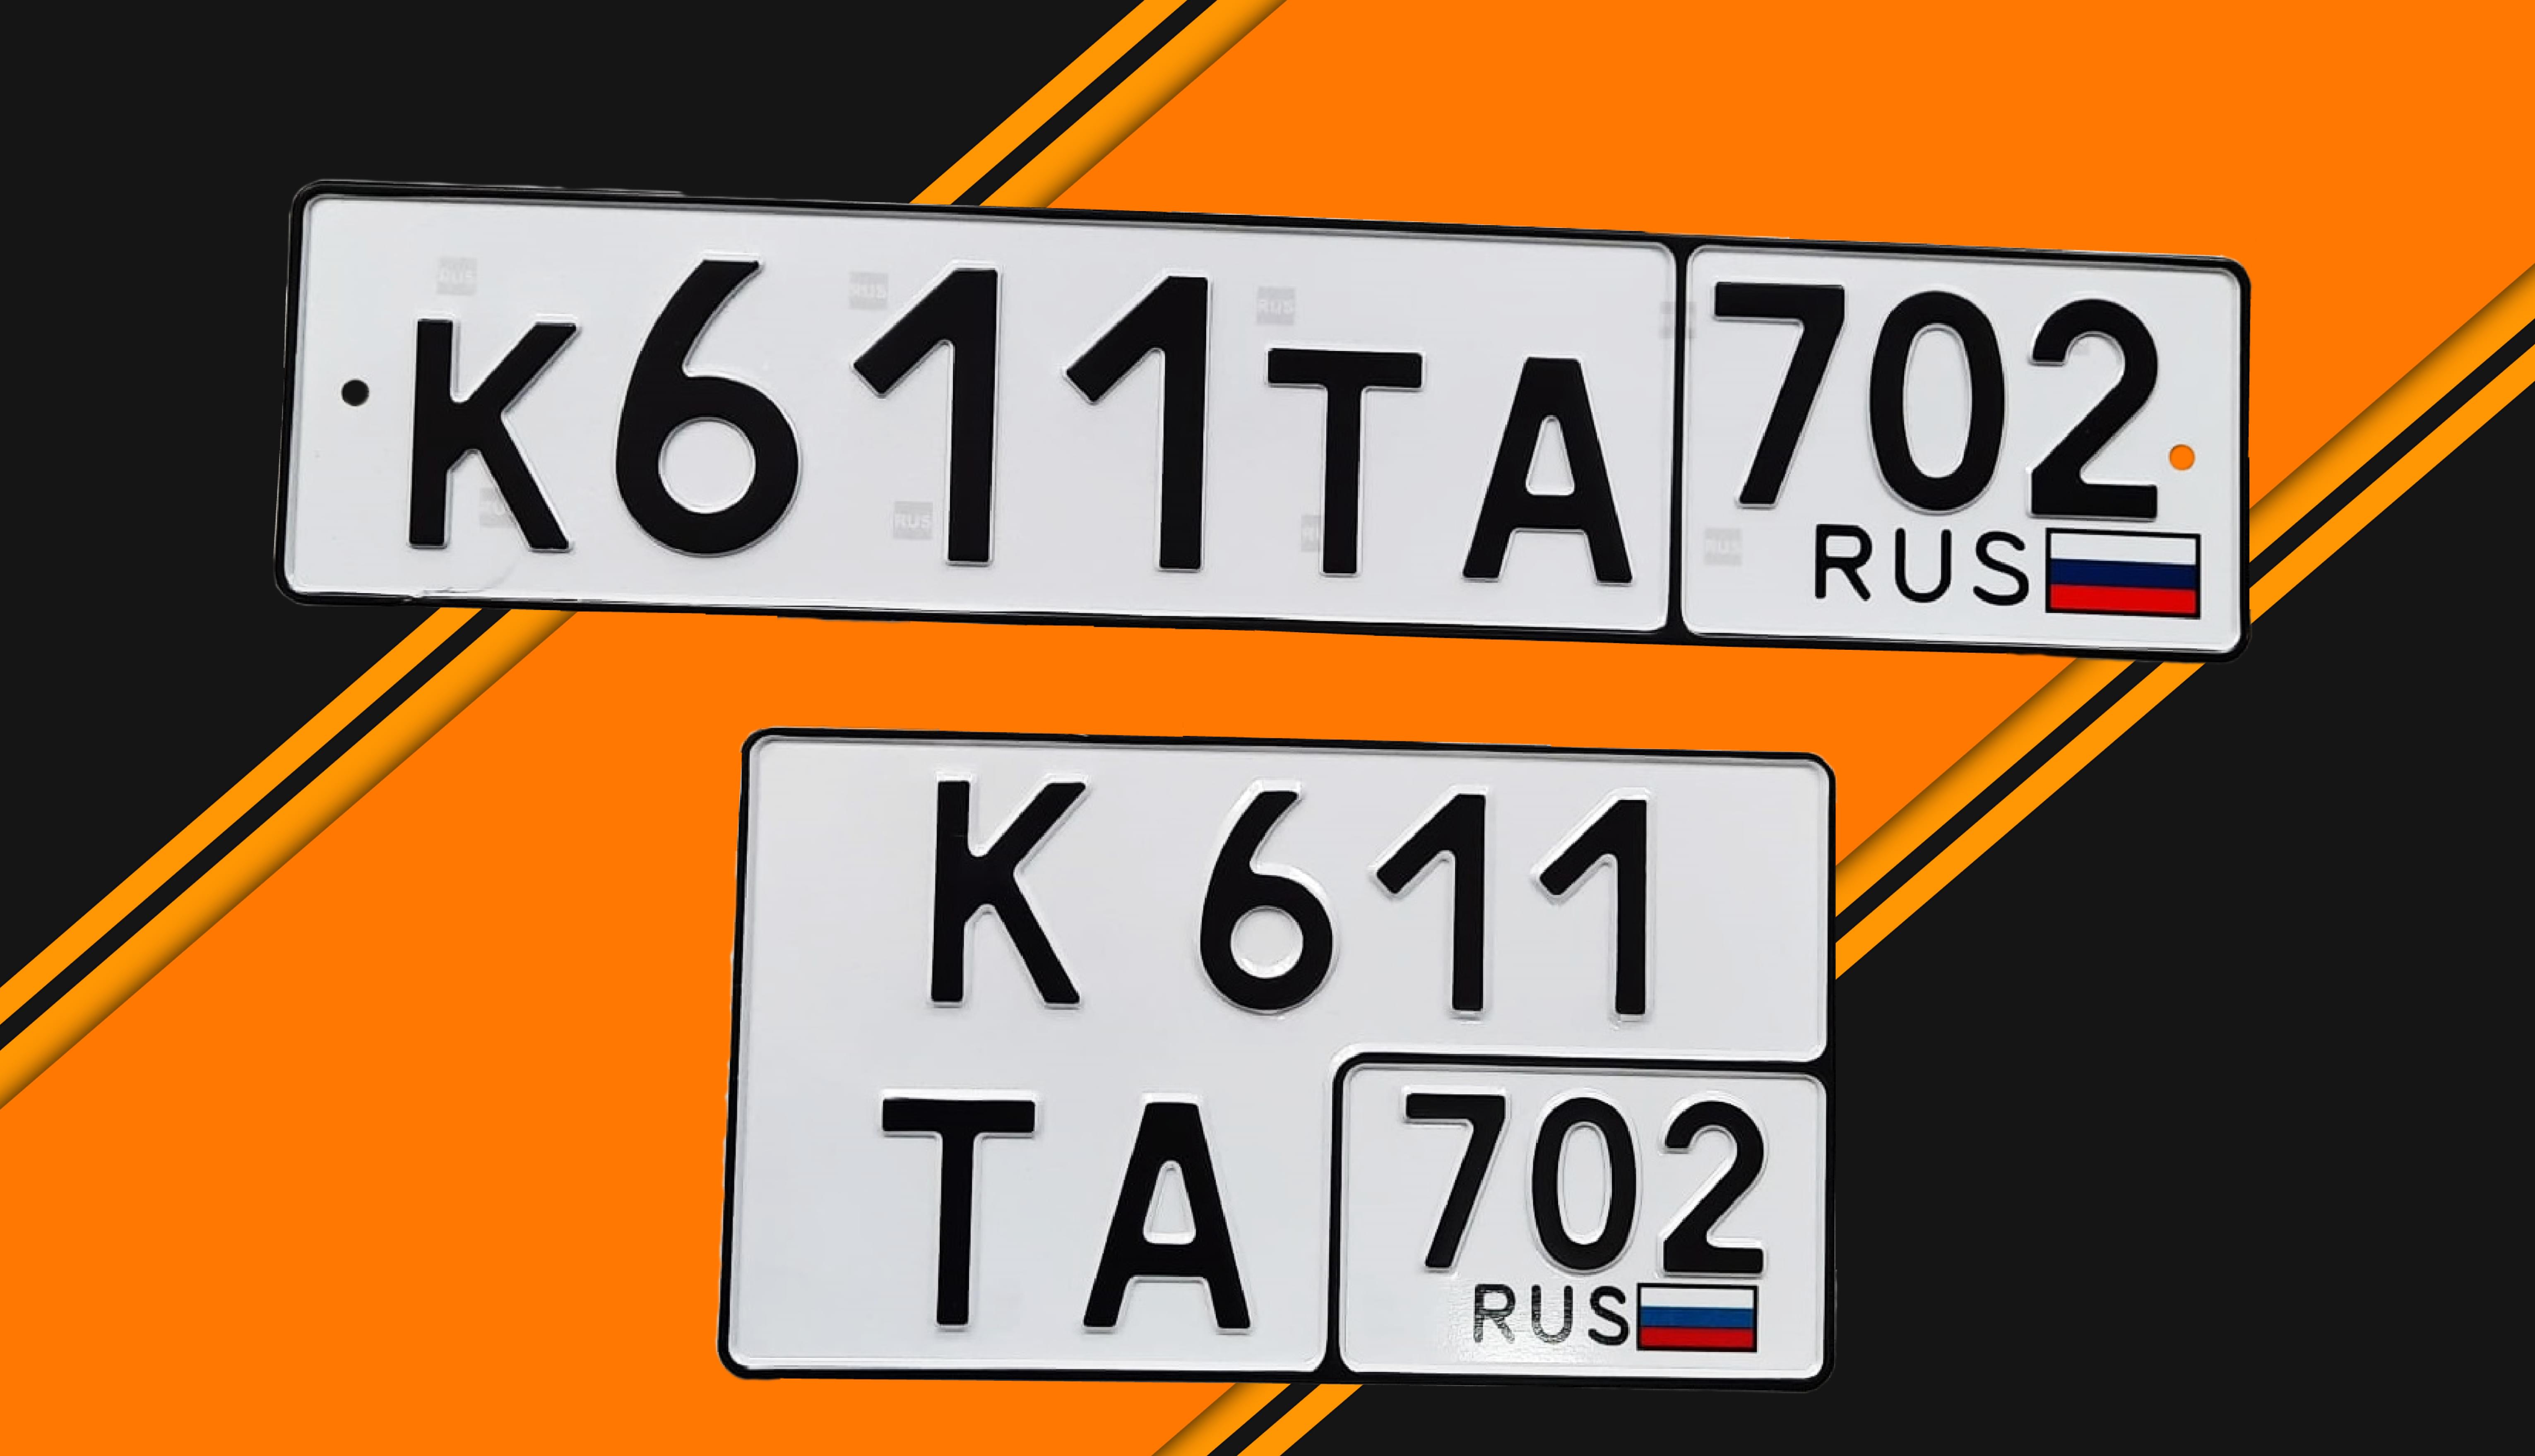 Автомобильный номерной знак стандарт и иквадрат К611ТА 763ru